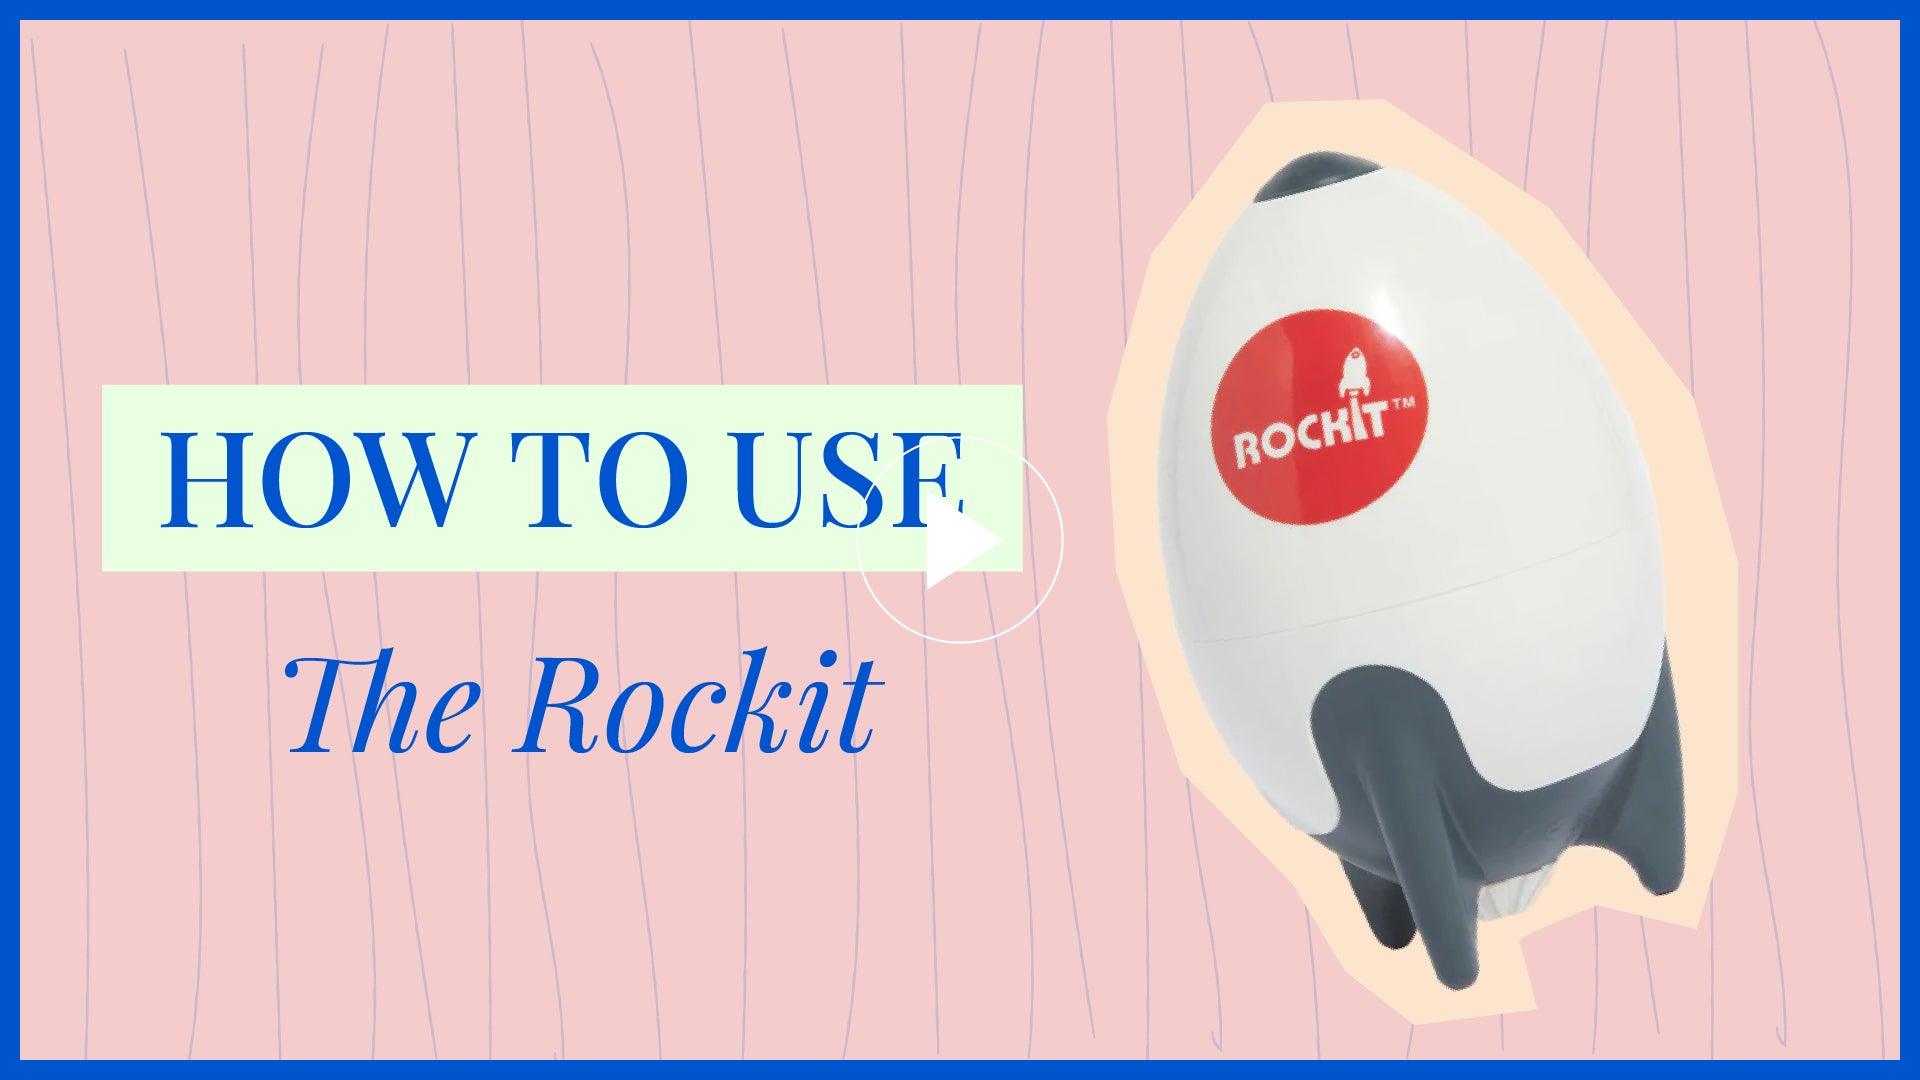 The Rockit Rocker